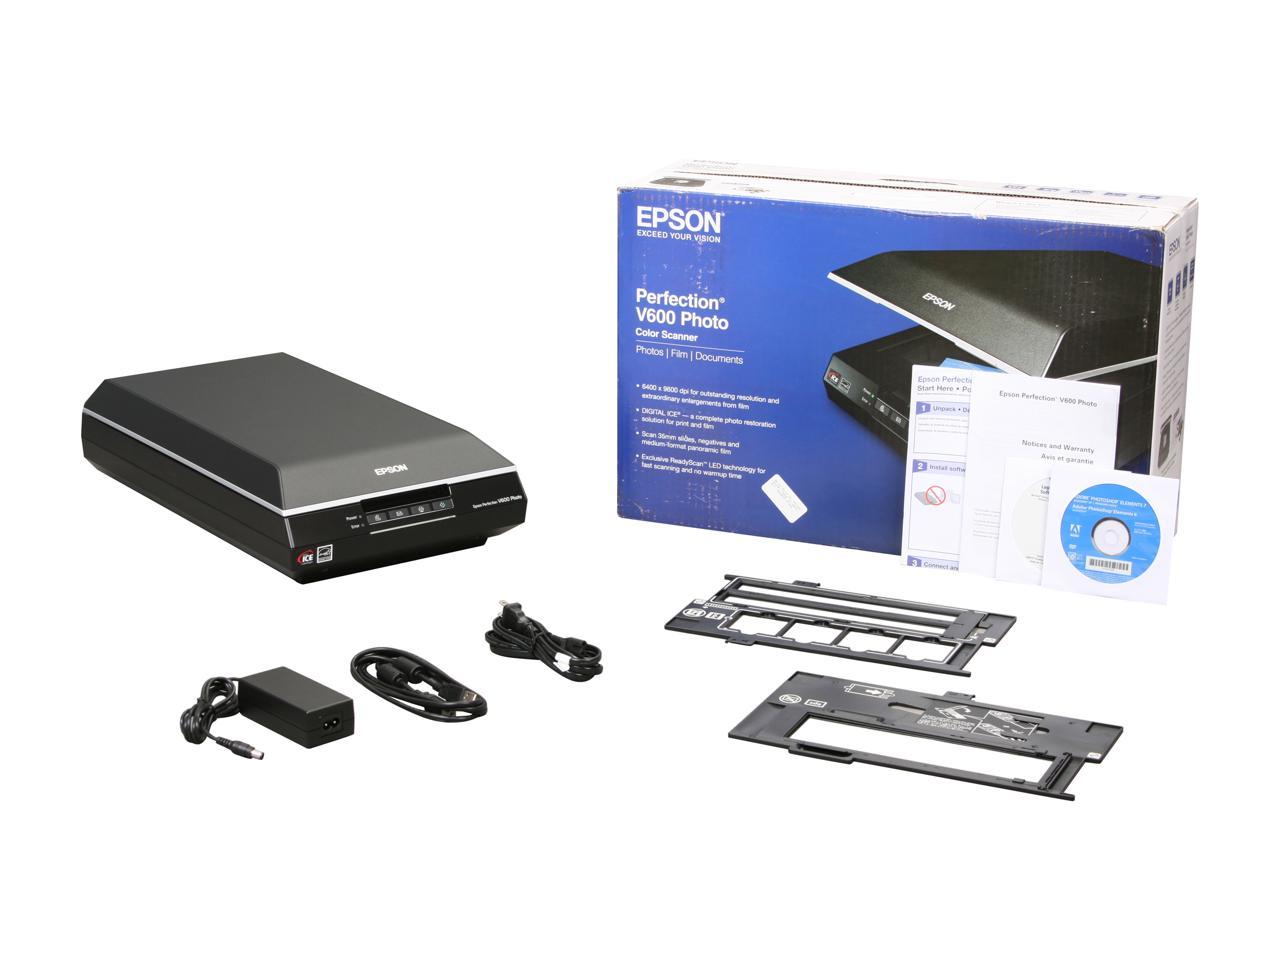 epson v600 photo scanner software download